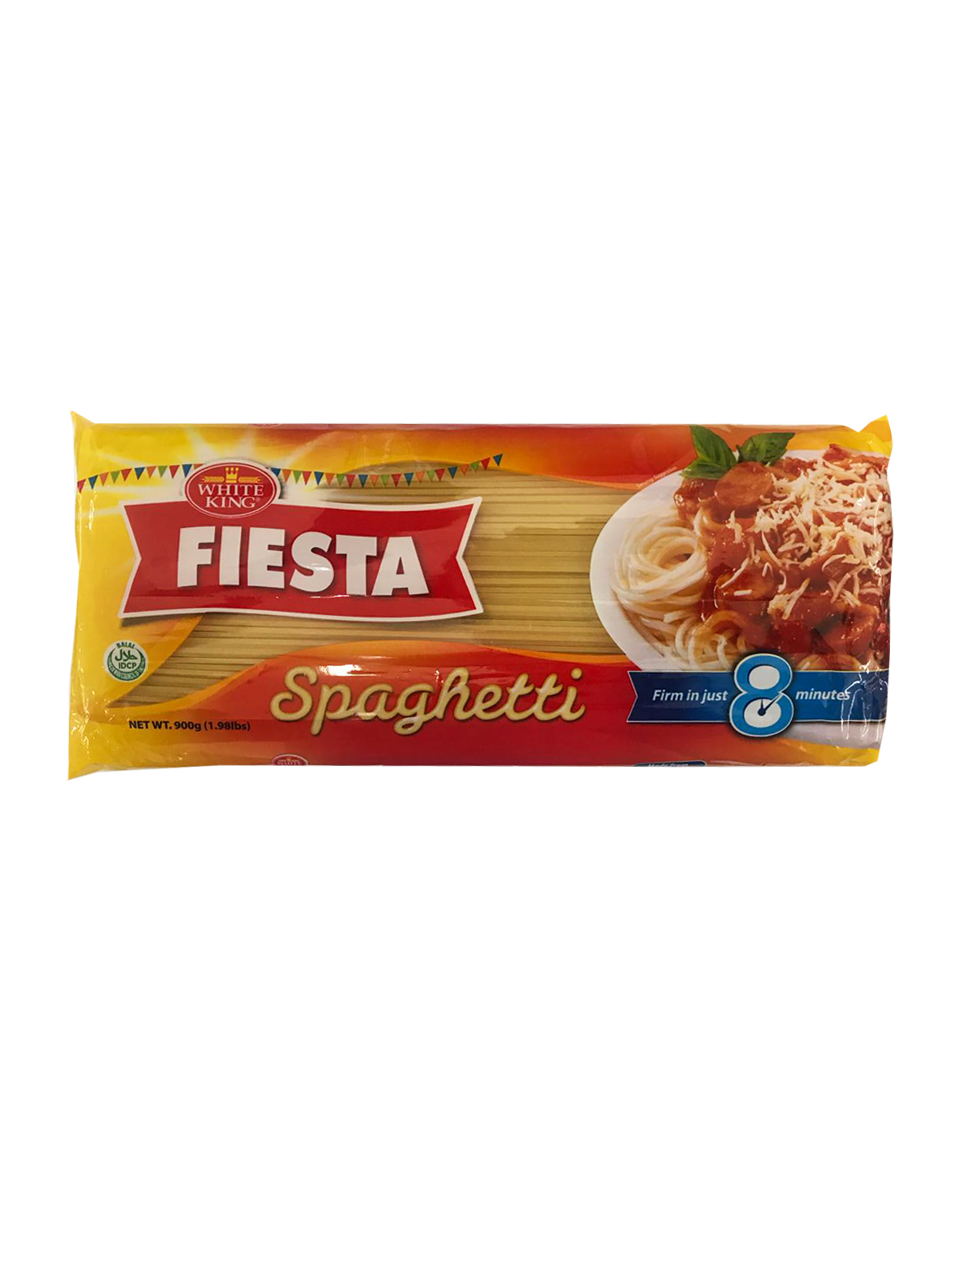 White King Fiesta Spaghetti Sticks 900g